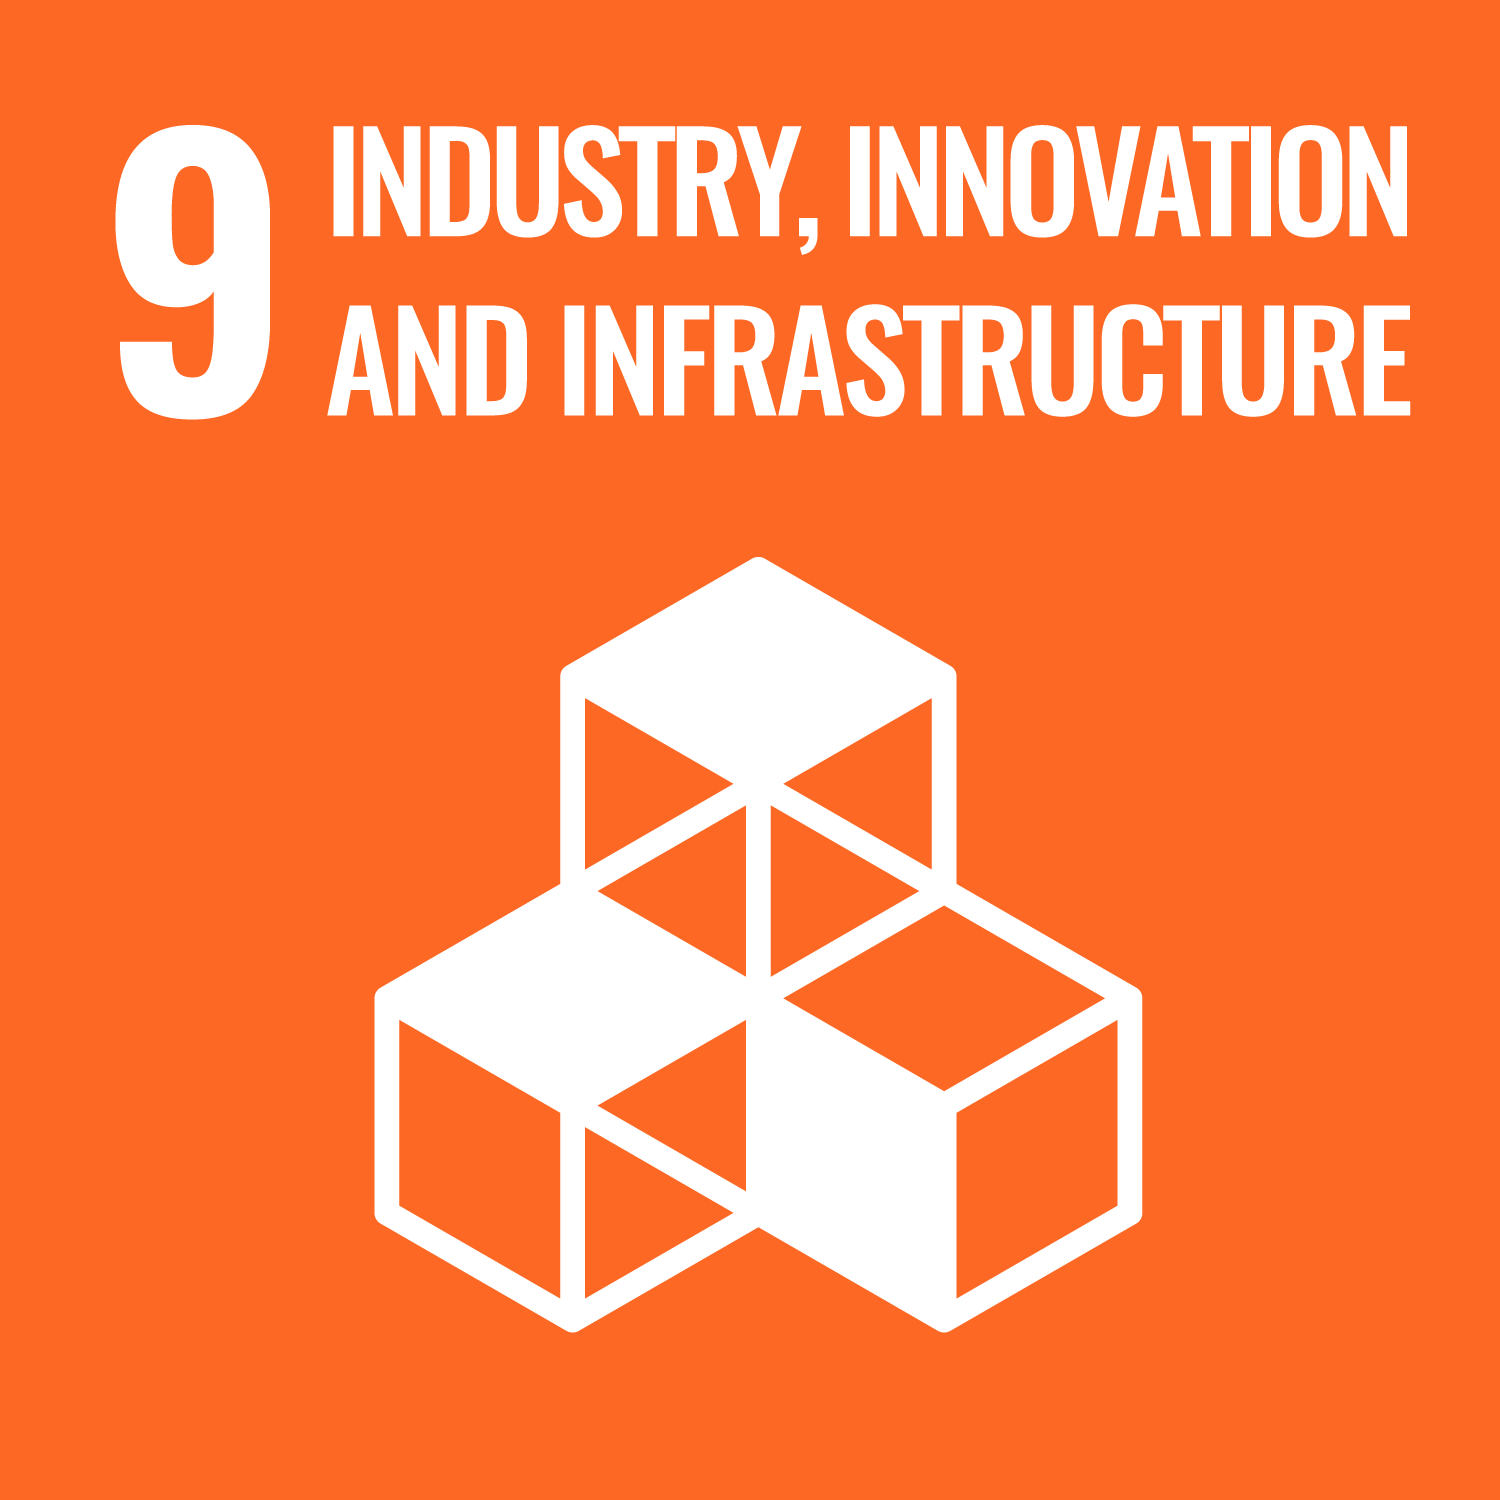 9. Ipar, innováció és infrastruktúra